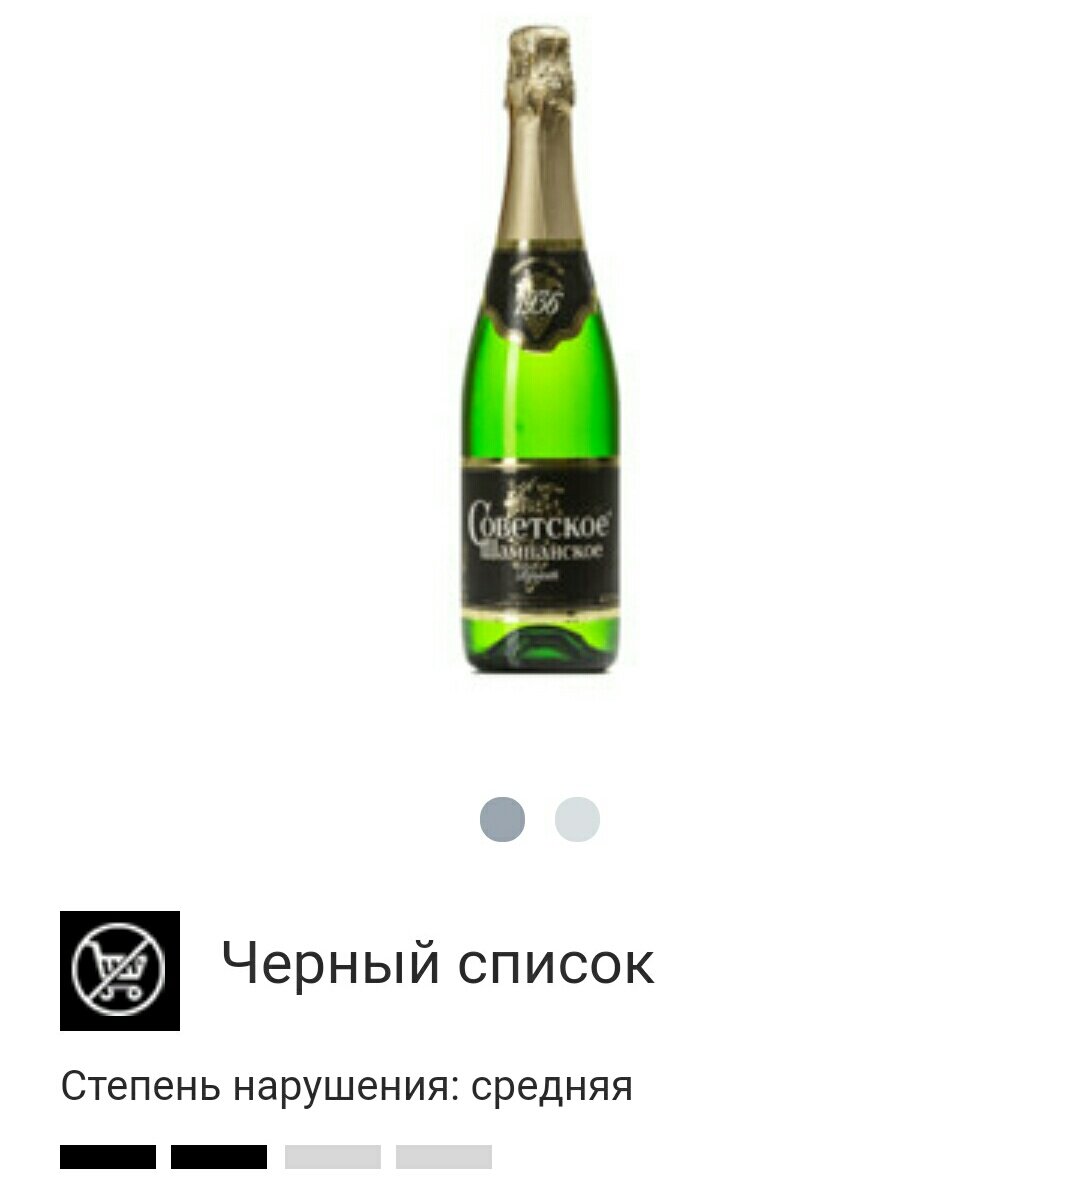 Бутылка советского шампанского. Вино игристое советское шампанское белое брют. Советское шампанское брют 1936. Вино игристое советское шампанское бел.